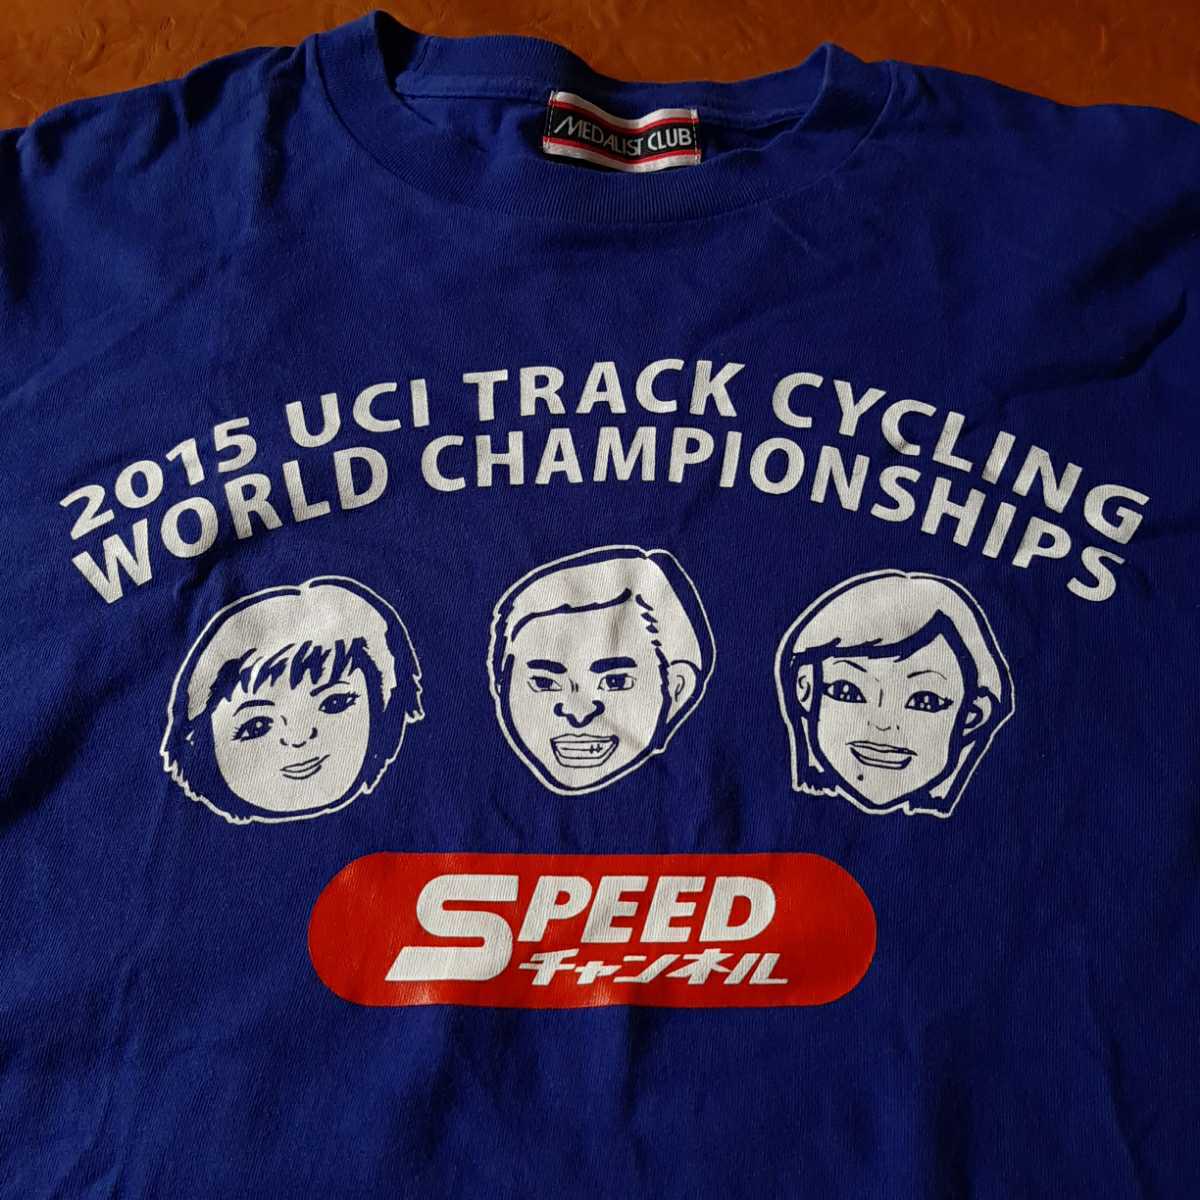  велогонки 2015 UCI TRACK CYCLING WORLD CHAMPION SHIPS футболка синий штат служащих для SPEED CHANNEL скорость канал отношение человек направление Kei Lynn KEIRIN